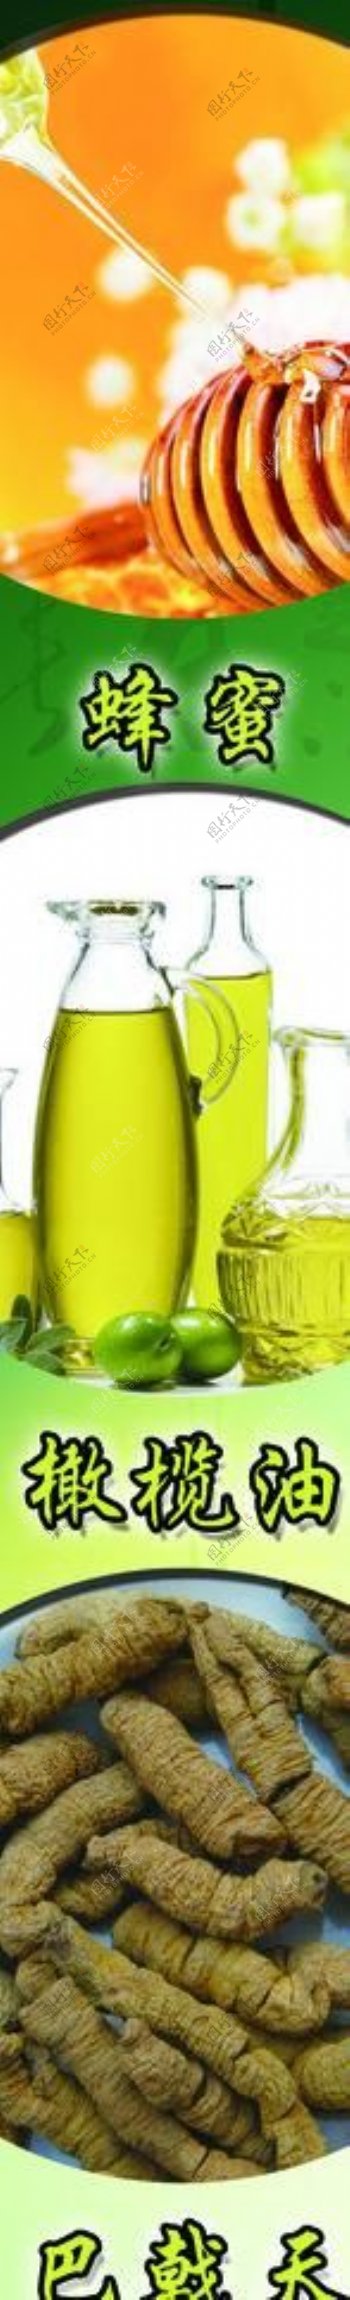 橄榄油展板图片